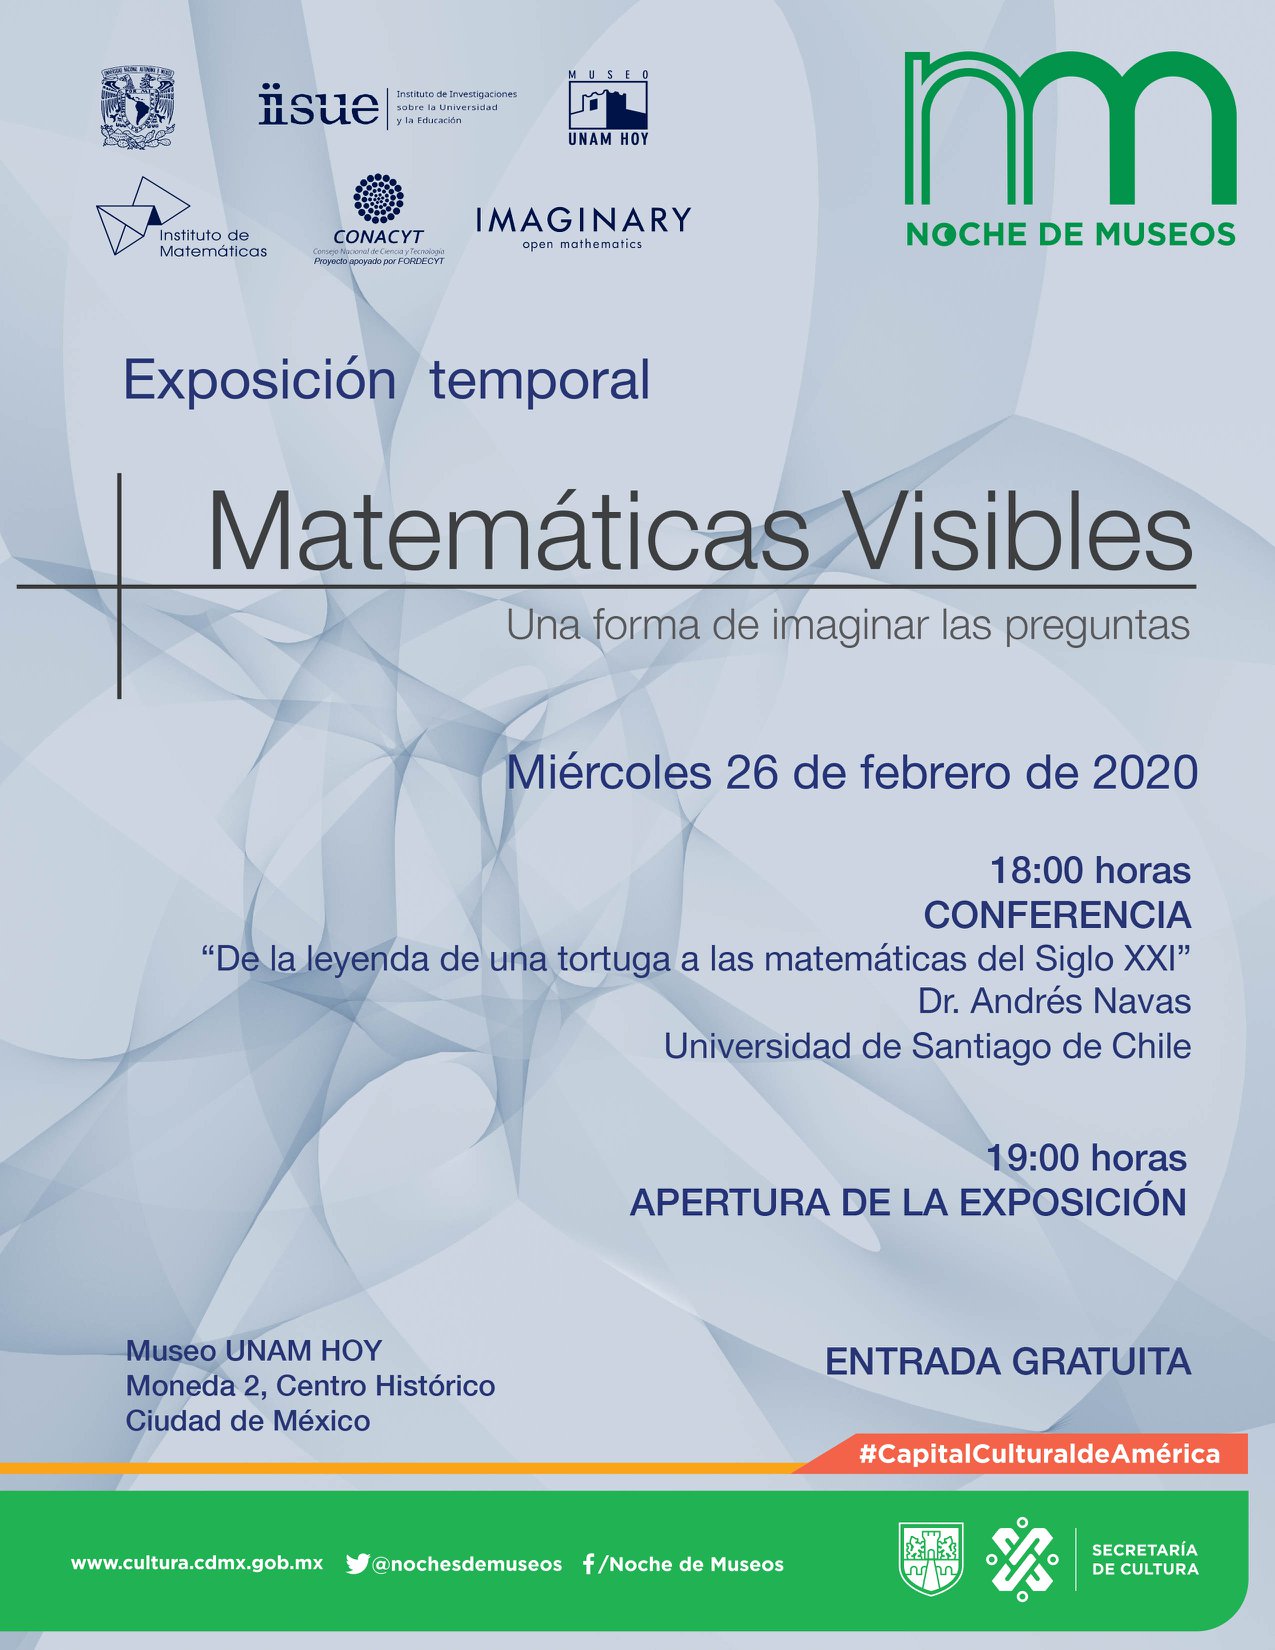 Inicia la exposición Matemáticas Visibles en el Museo UNAM HOY